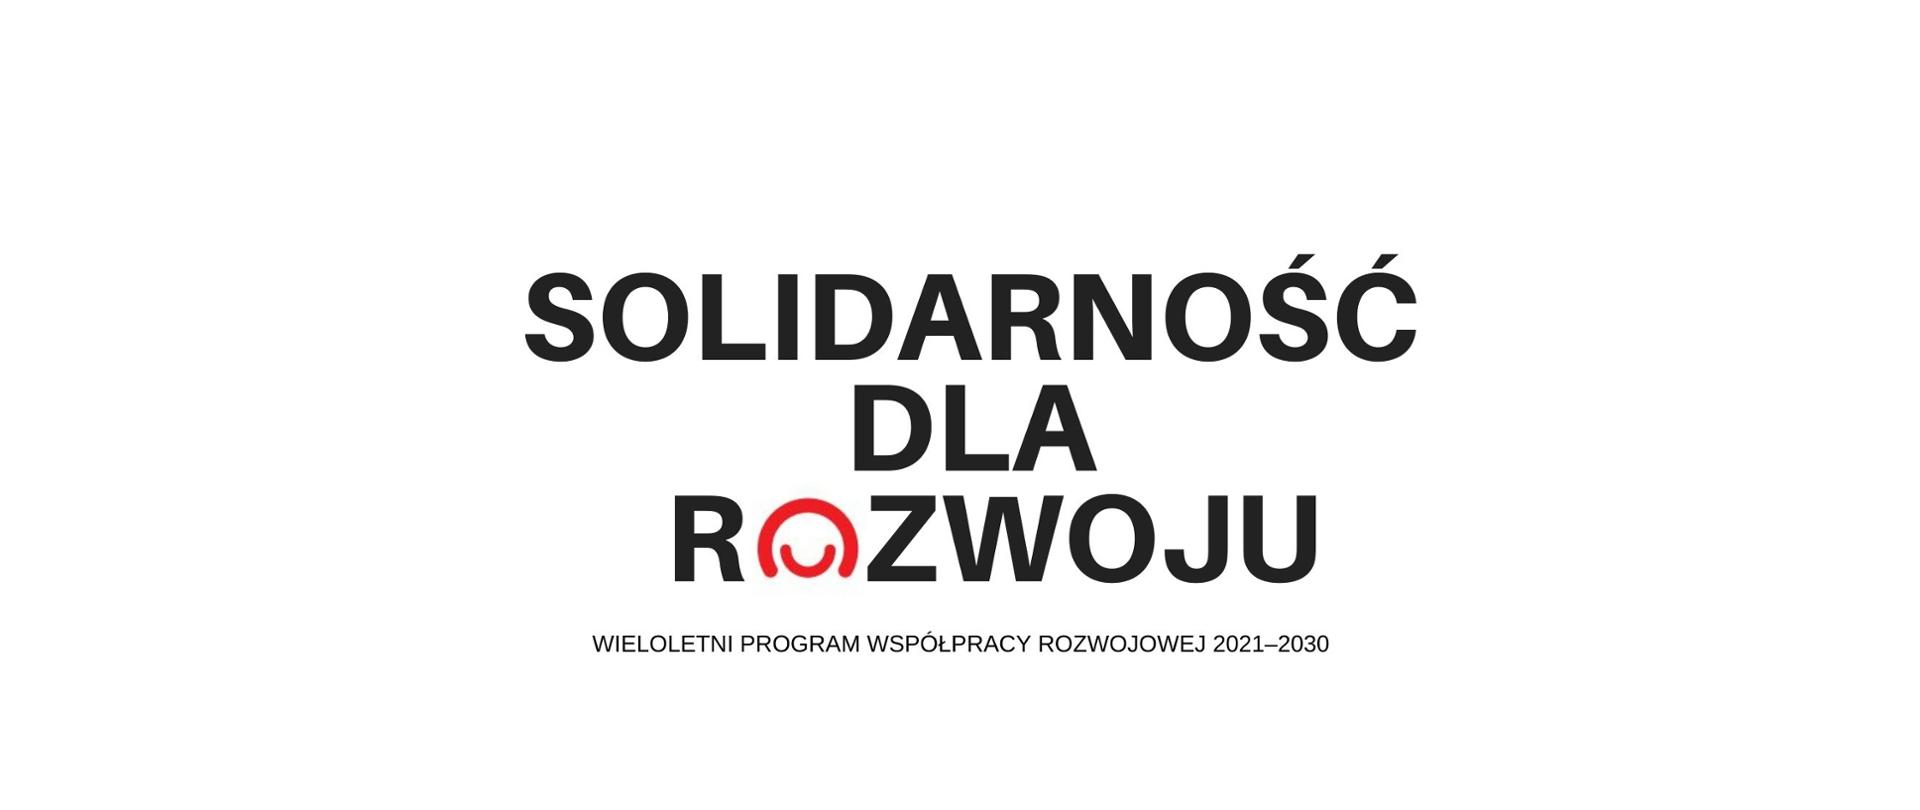 Wieloletni Program Współpracy Rozwojowej 2021-2030. Solidarność dla rozwoju